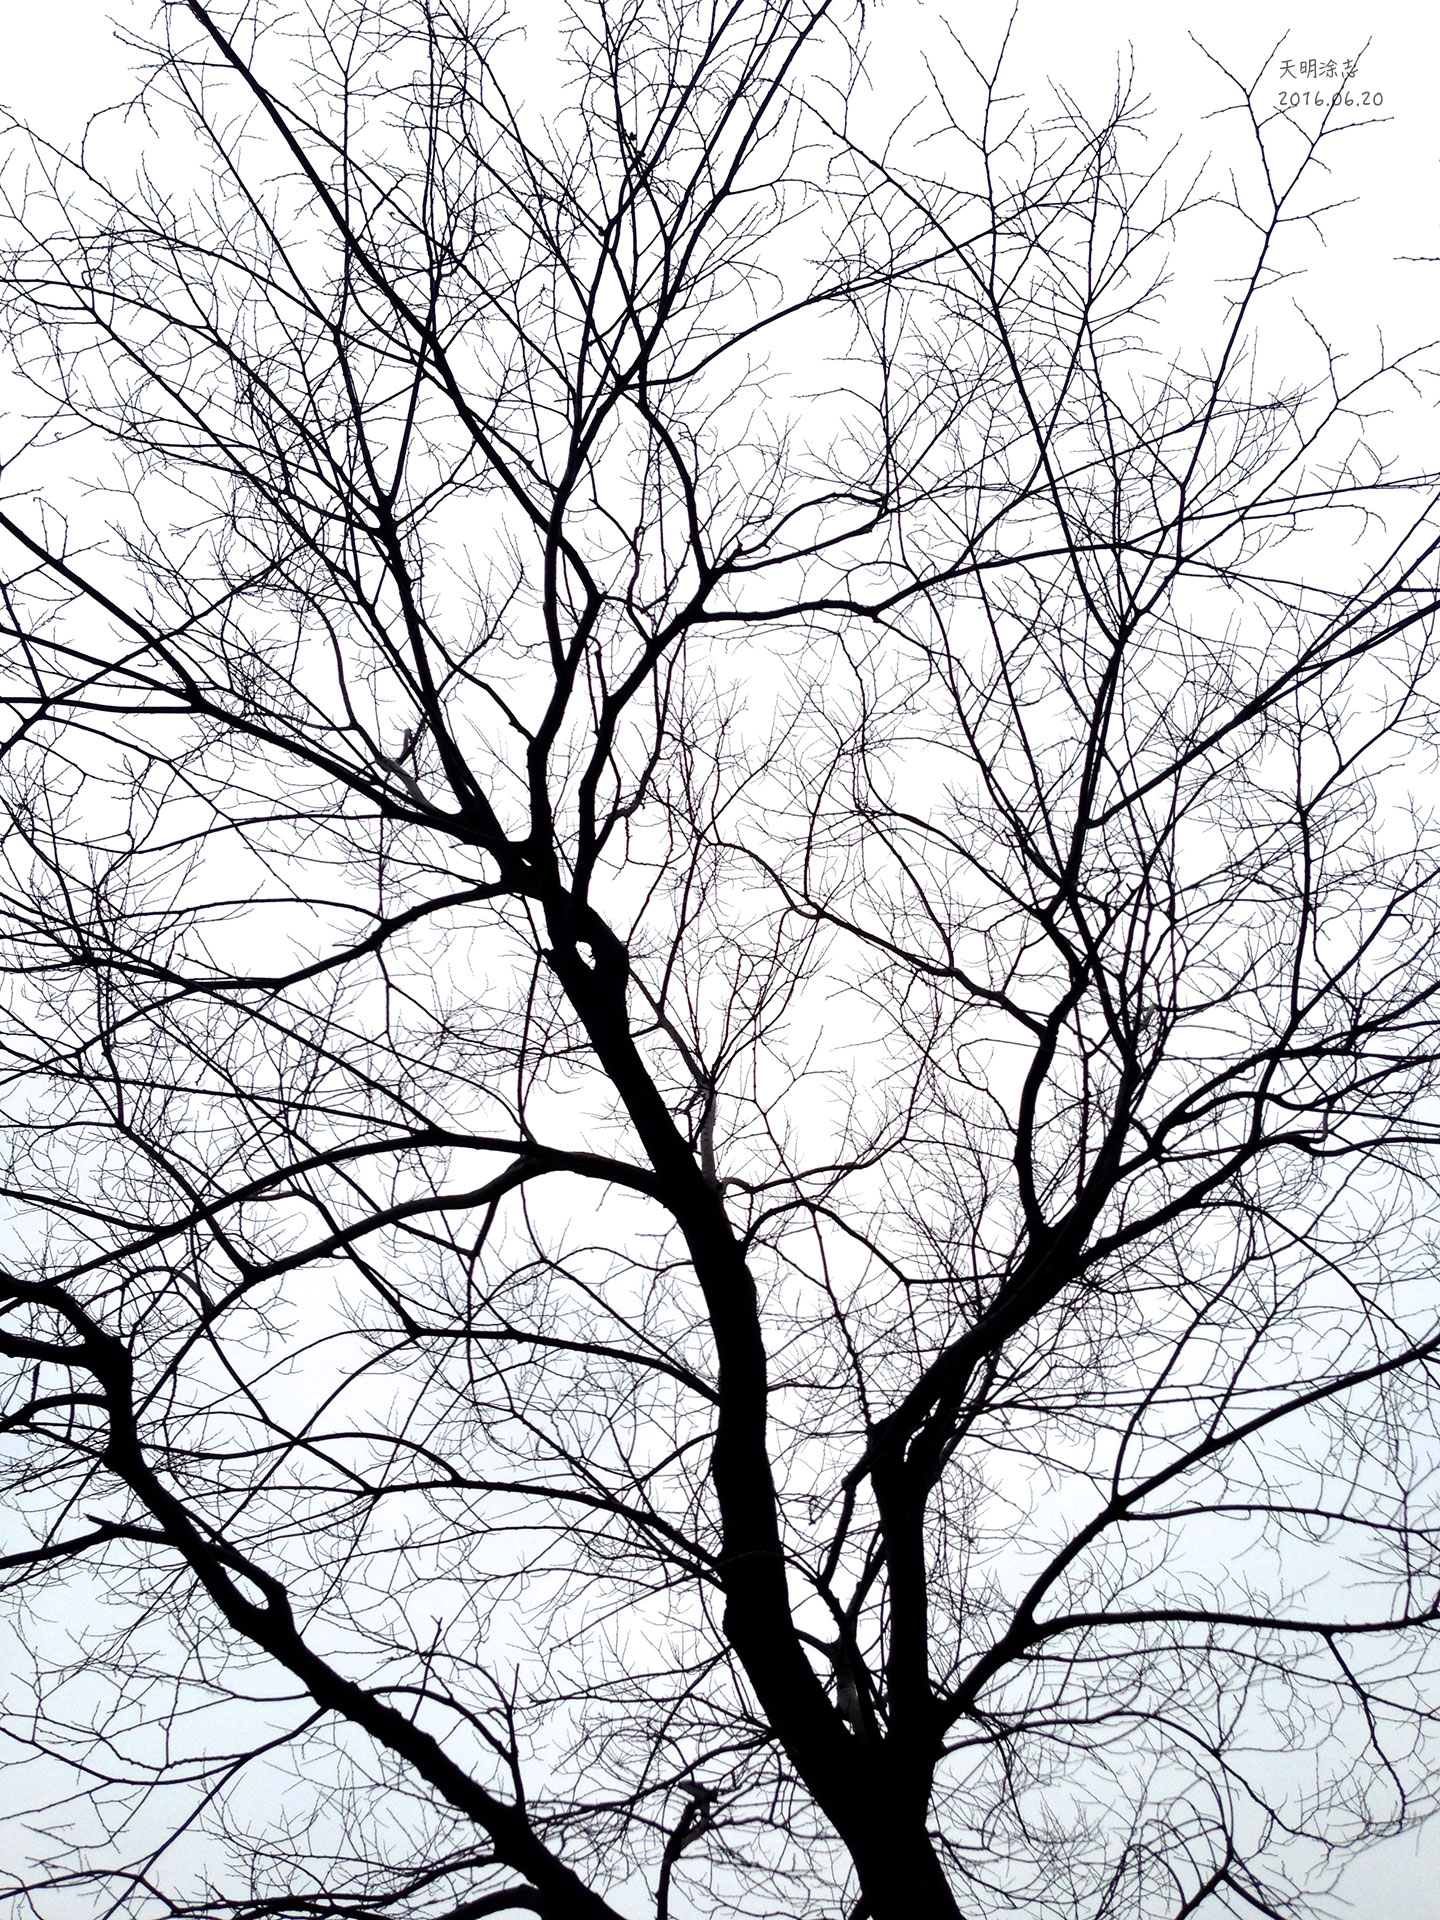 寒风与树枝